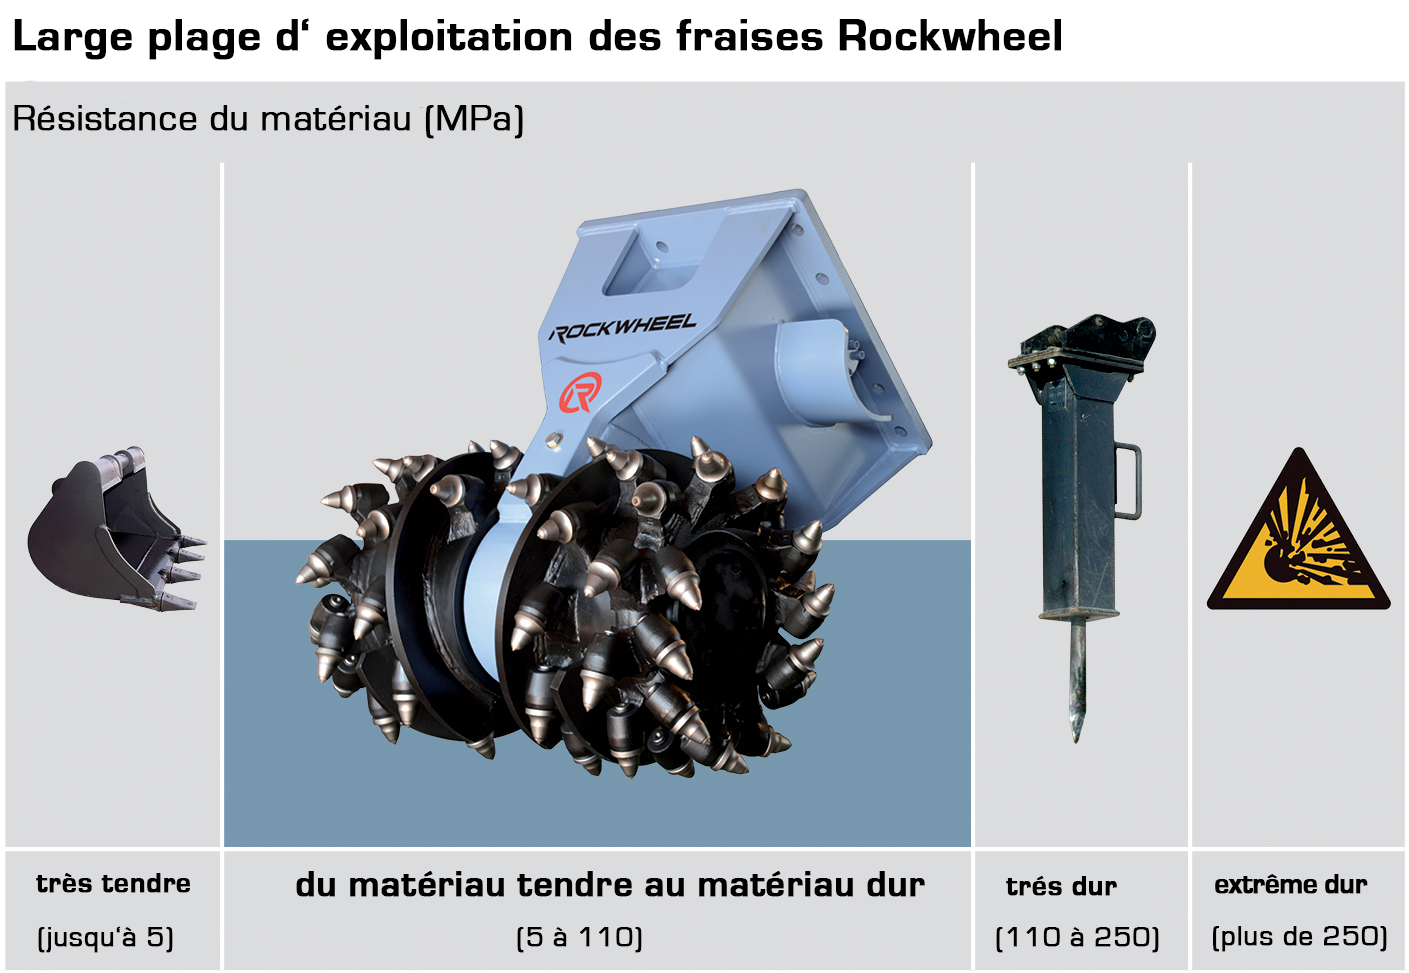 Rockcrusher Reverse Crushing Function